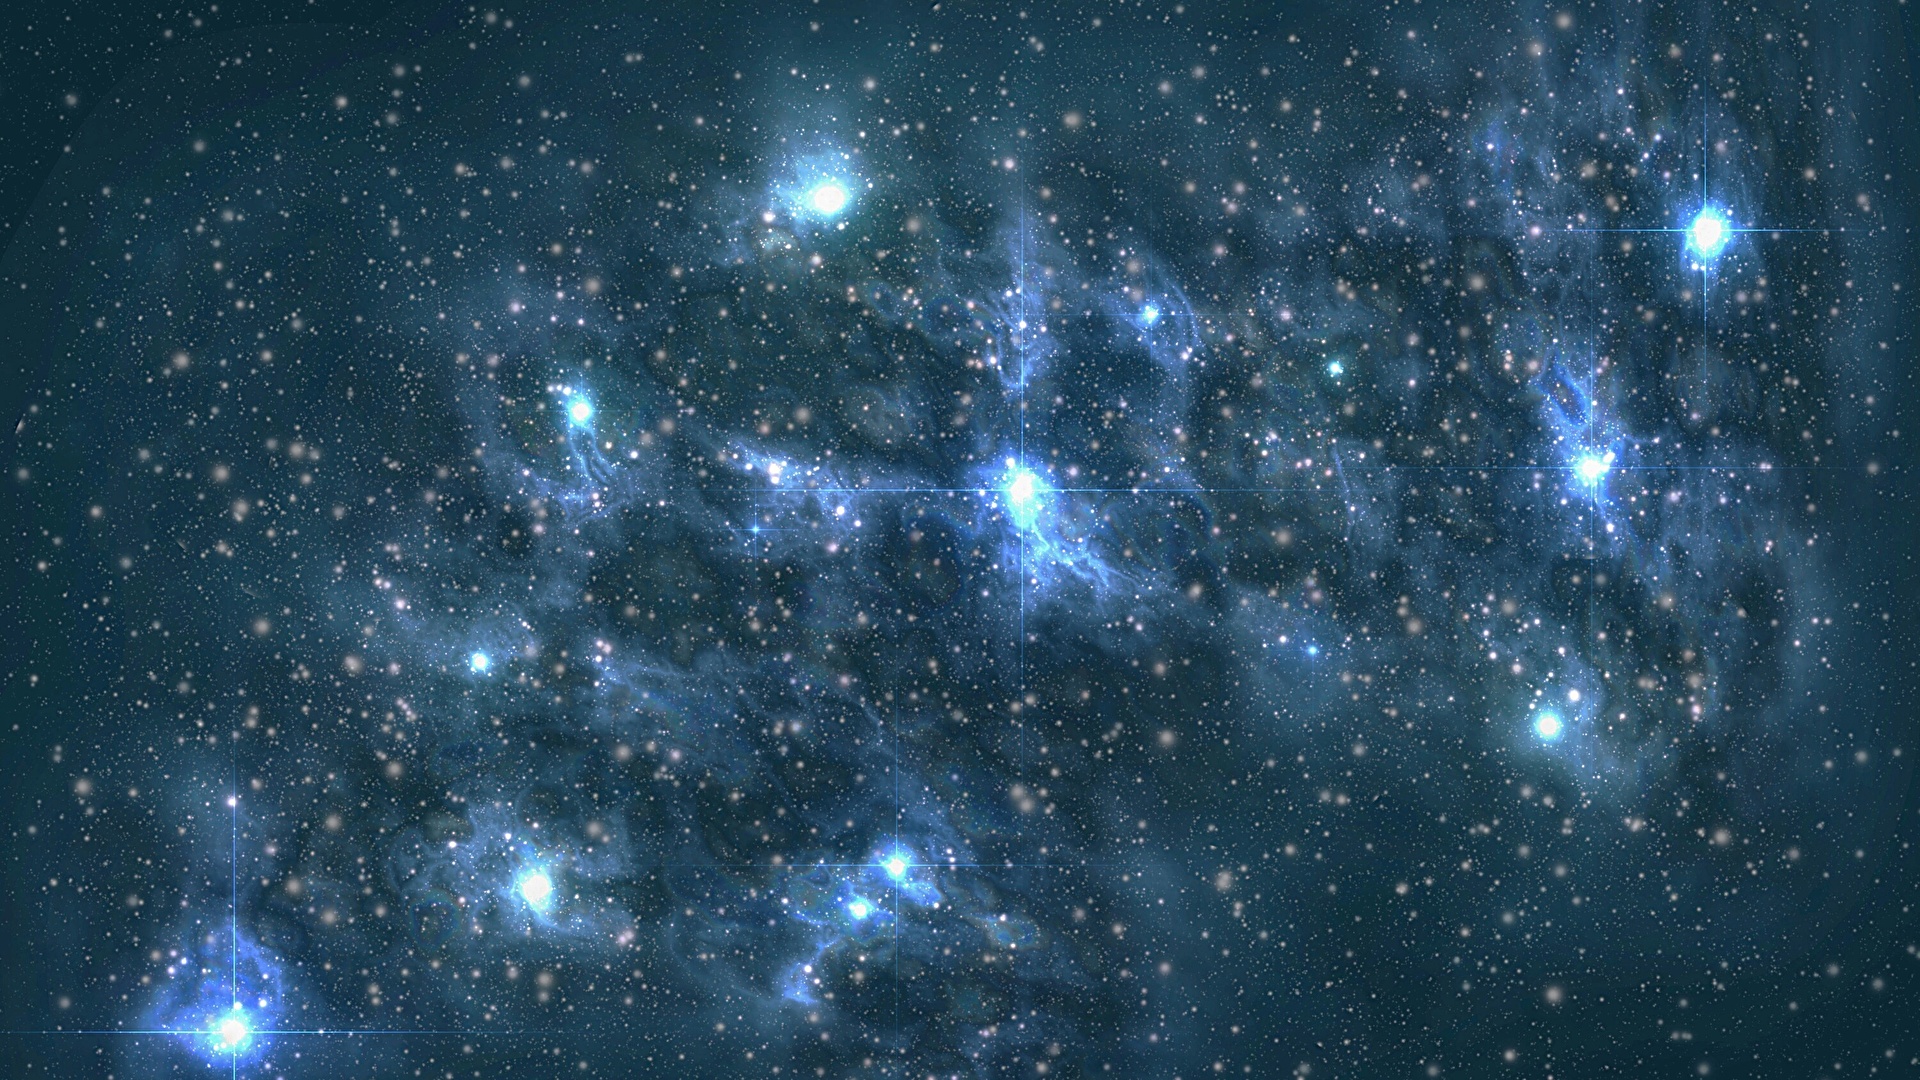 壁紙 19x1080 空間内の星雲 恒星 宇宙空間 ダウンロード 写真